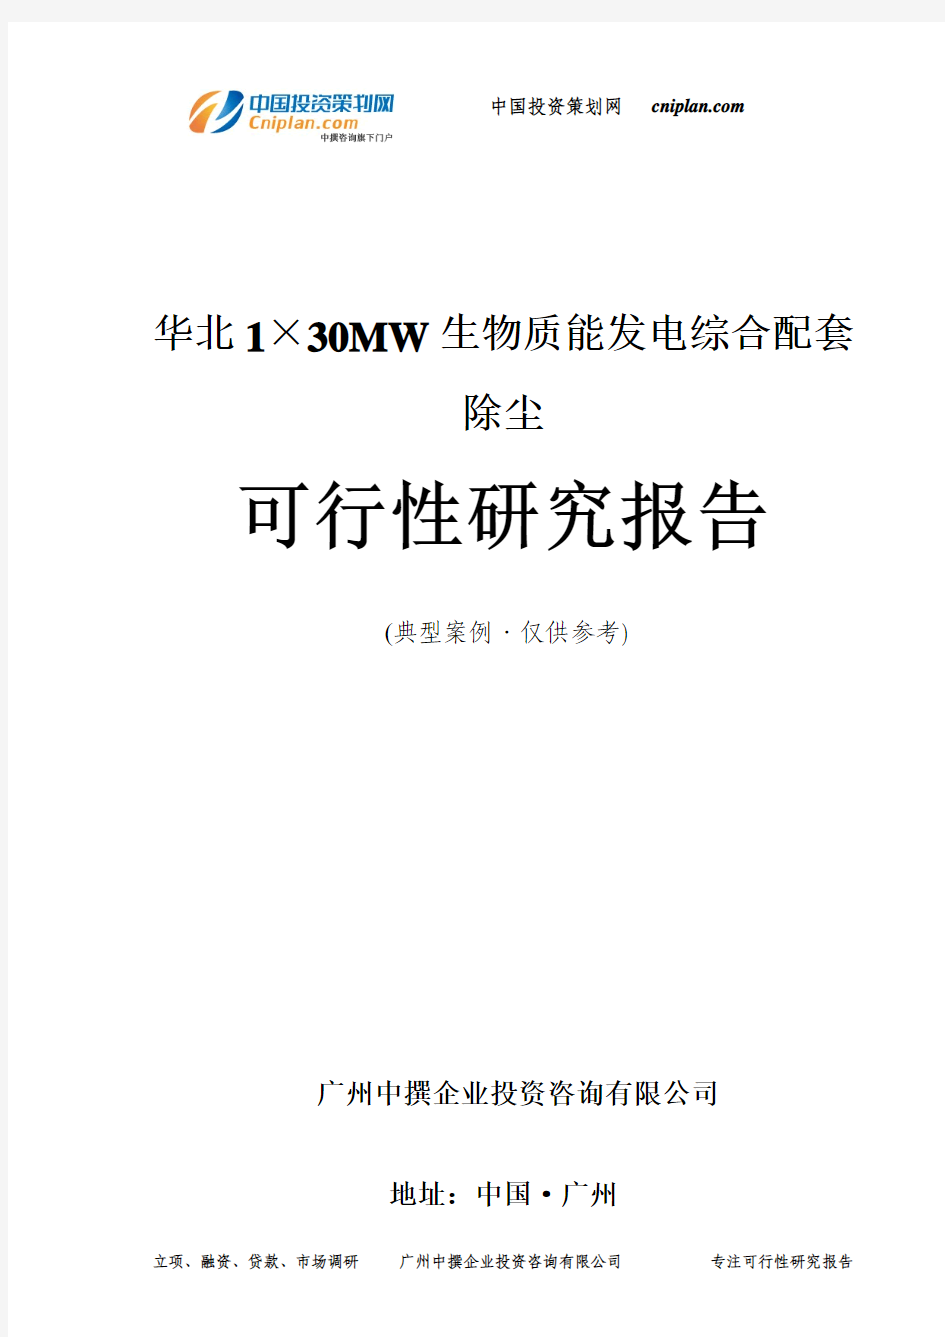 华北1×30MW生物质能发电综合配套除尘可行性研究报告-广州中撰咨询